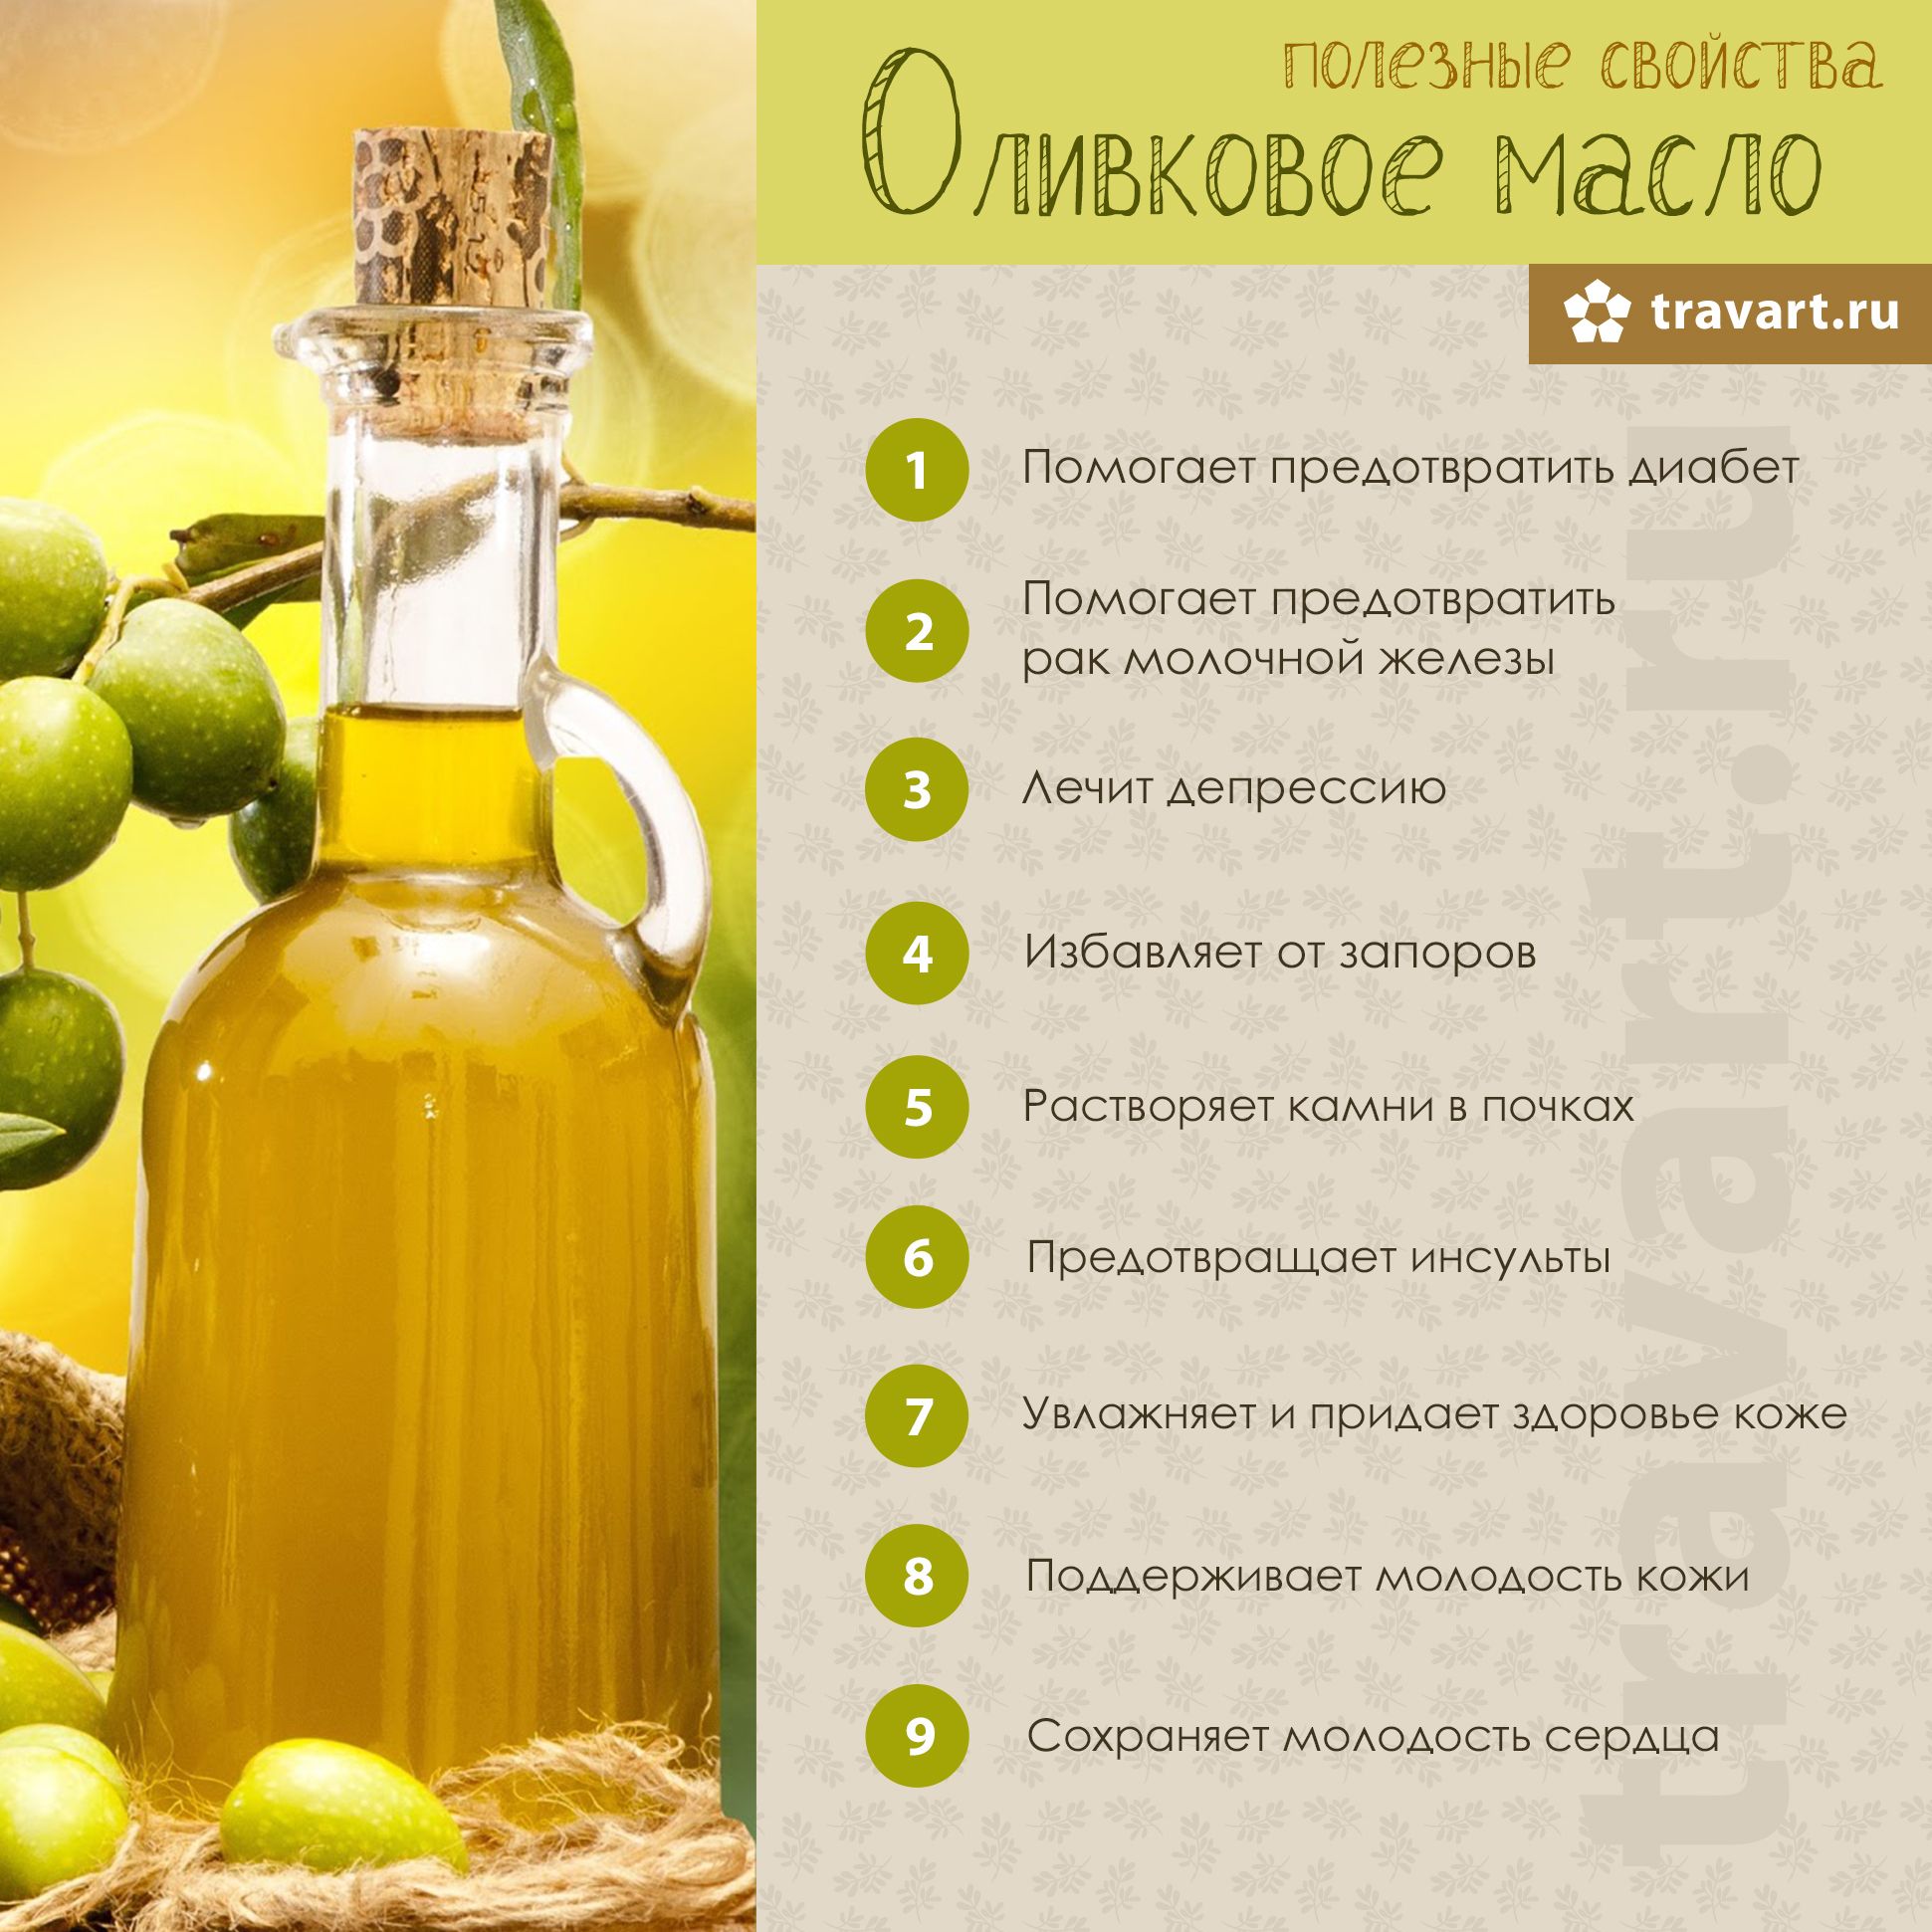 Оливковое масло: польза и вред продукта для организма человека